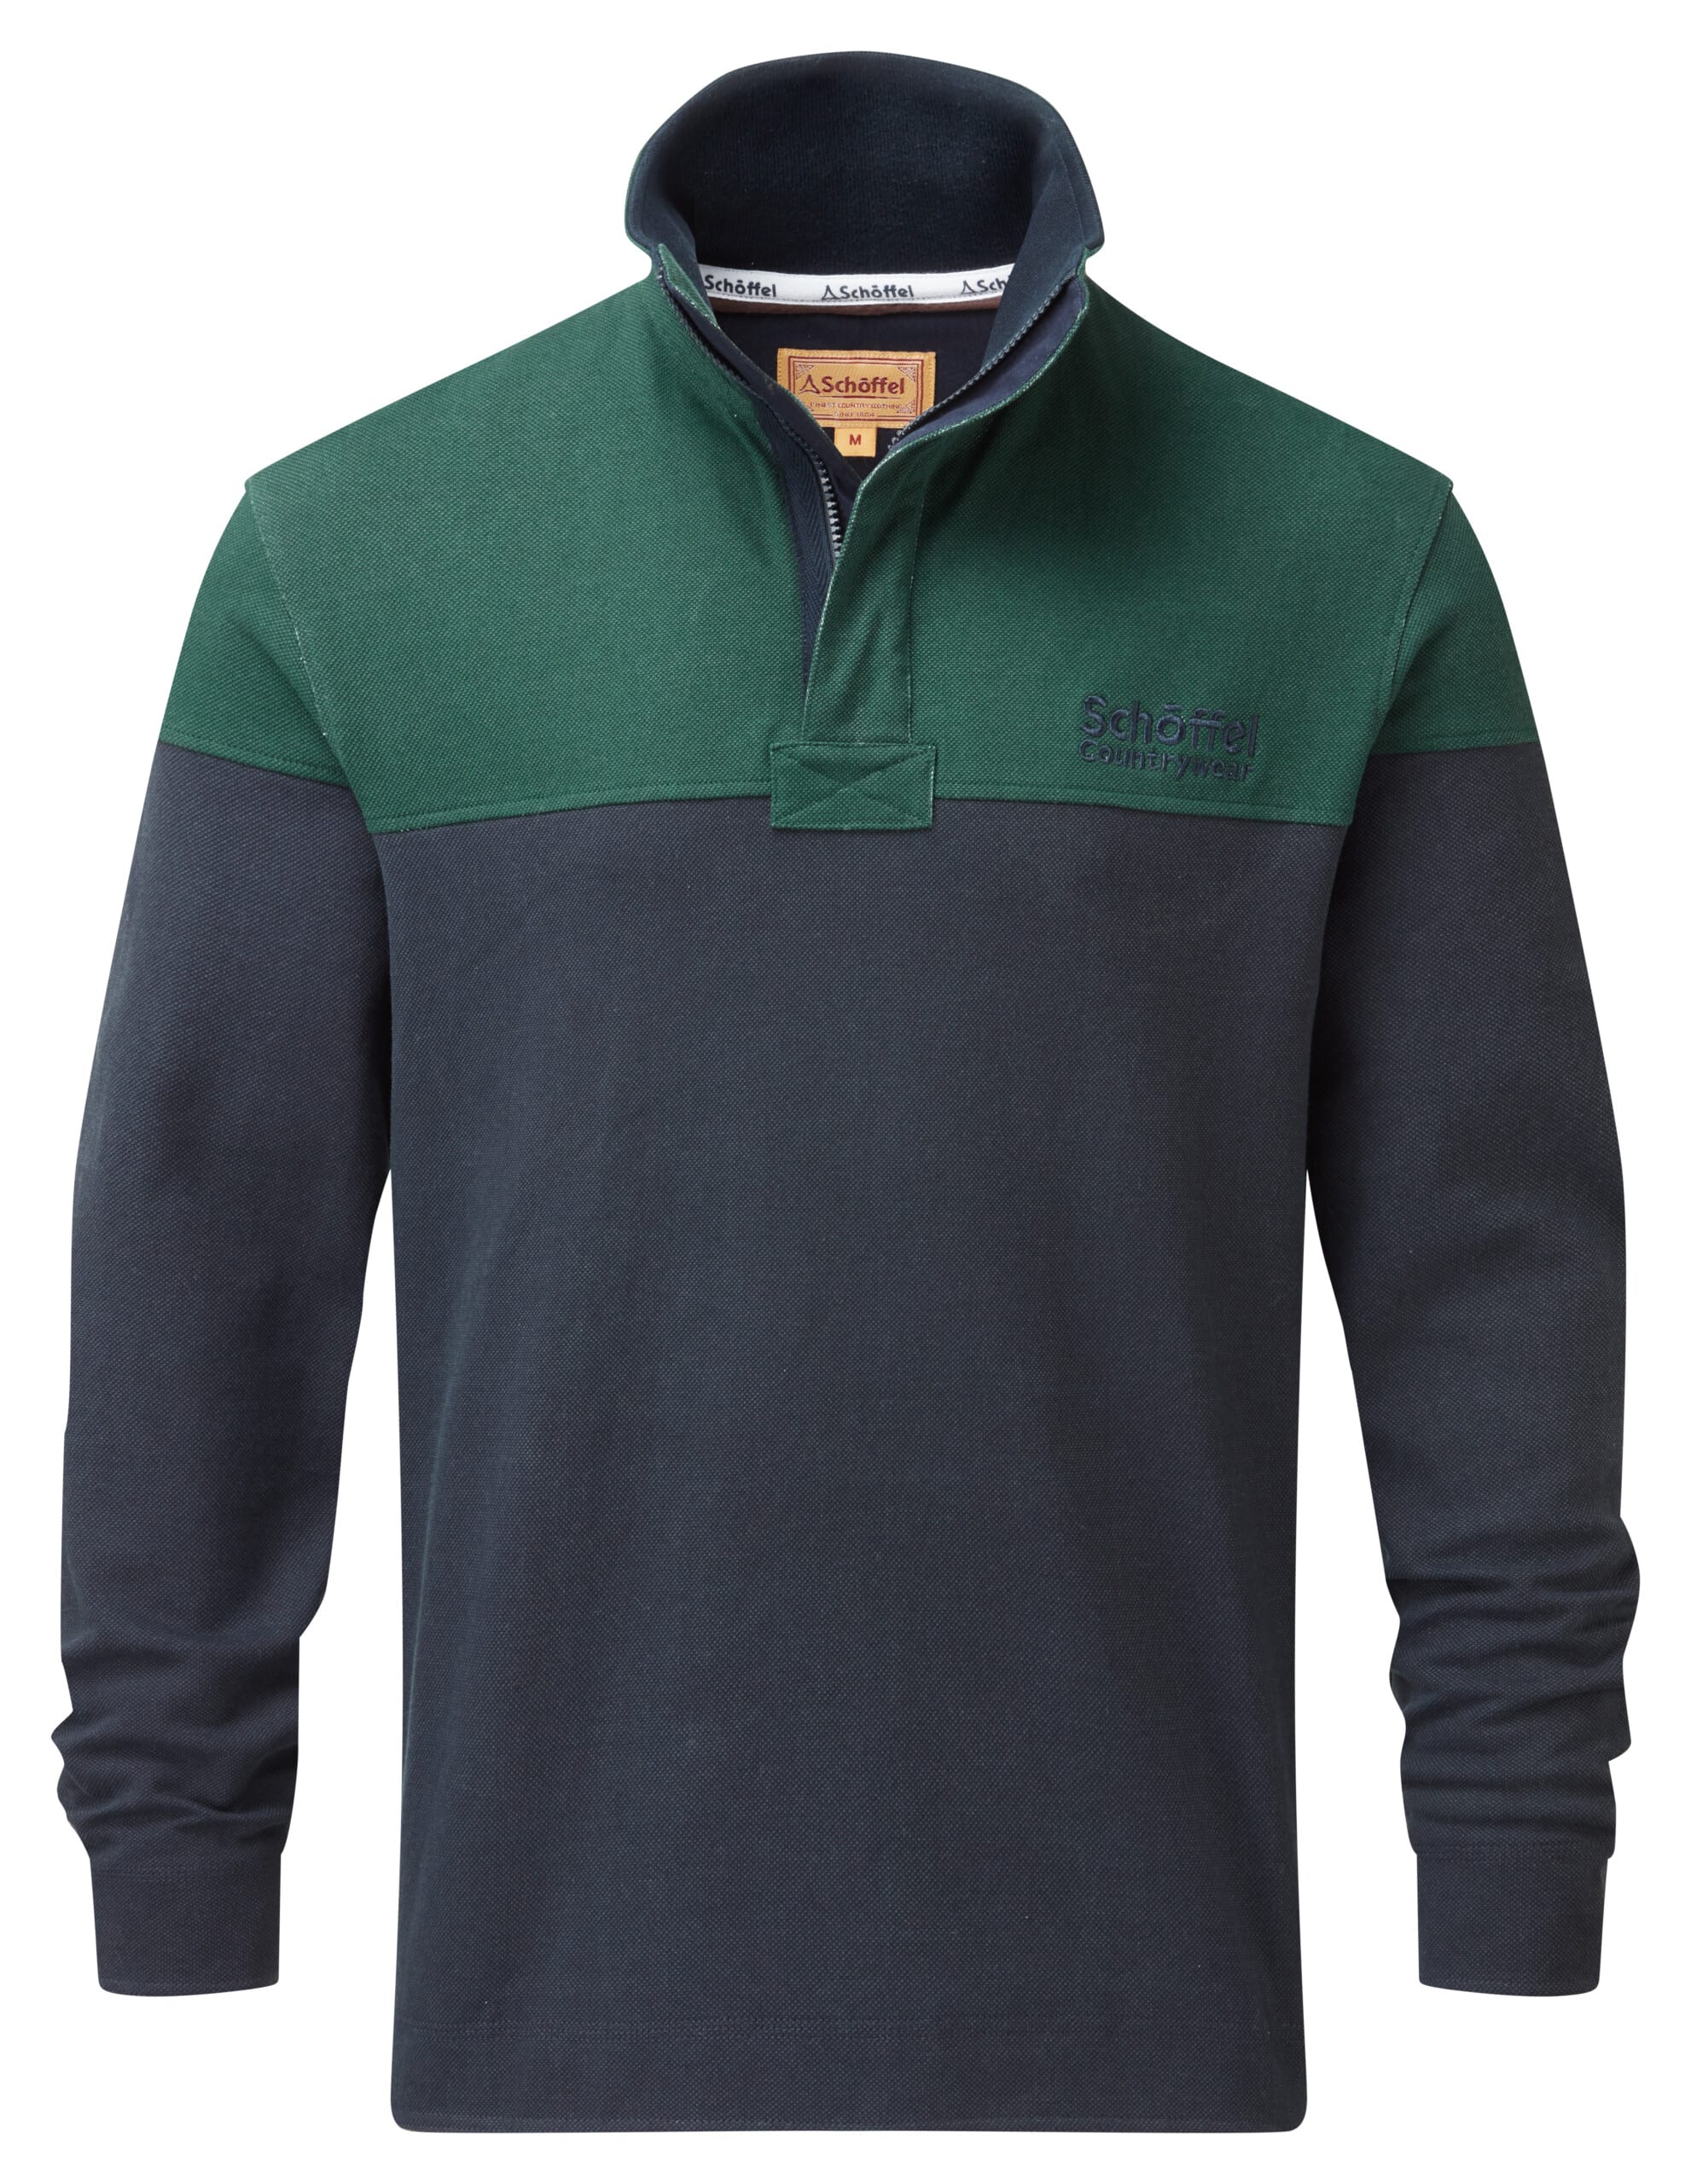 Helford Heritage Sweatshirt – Navy/Pine Green